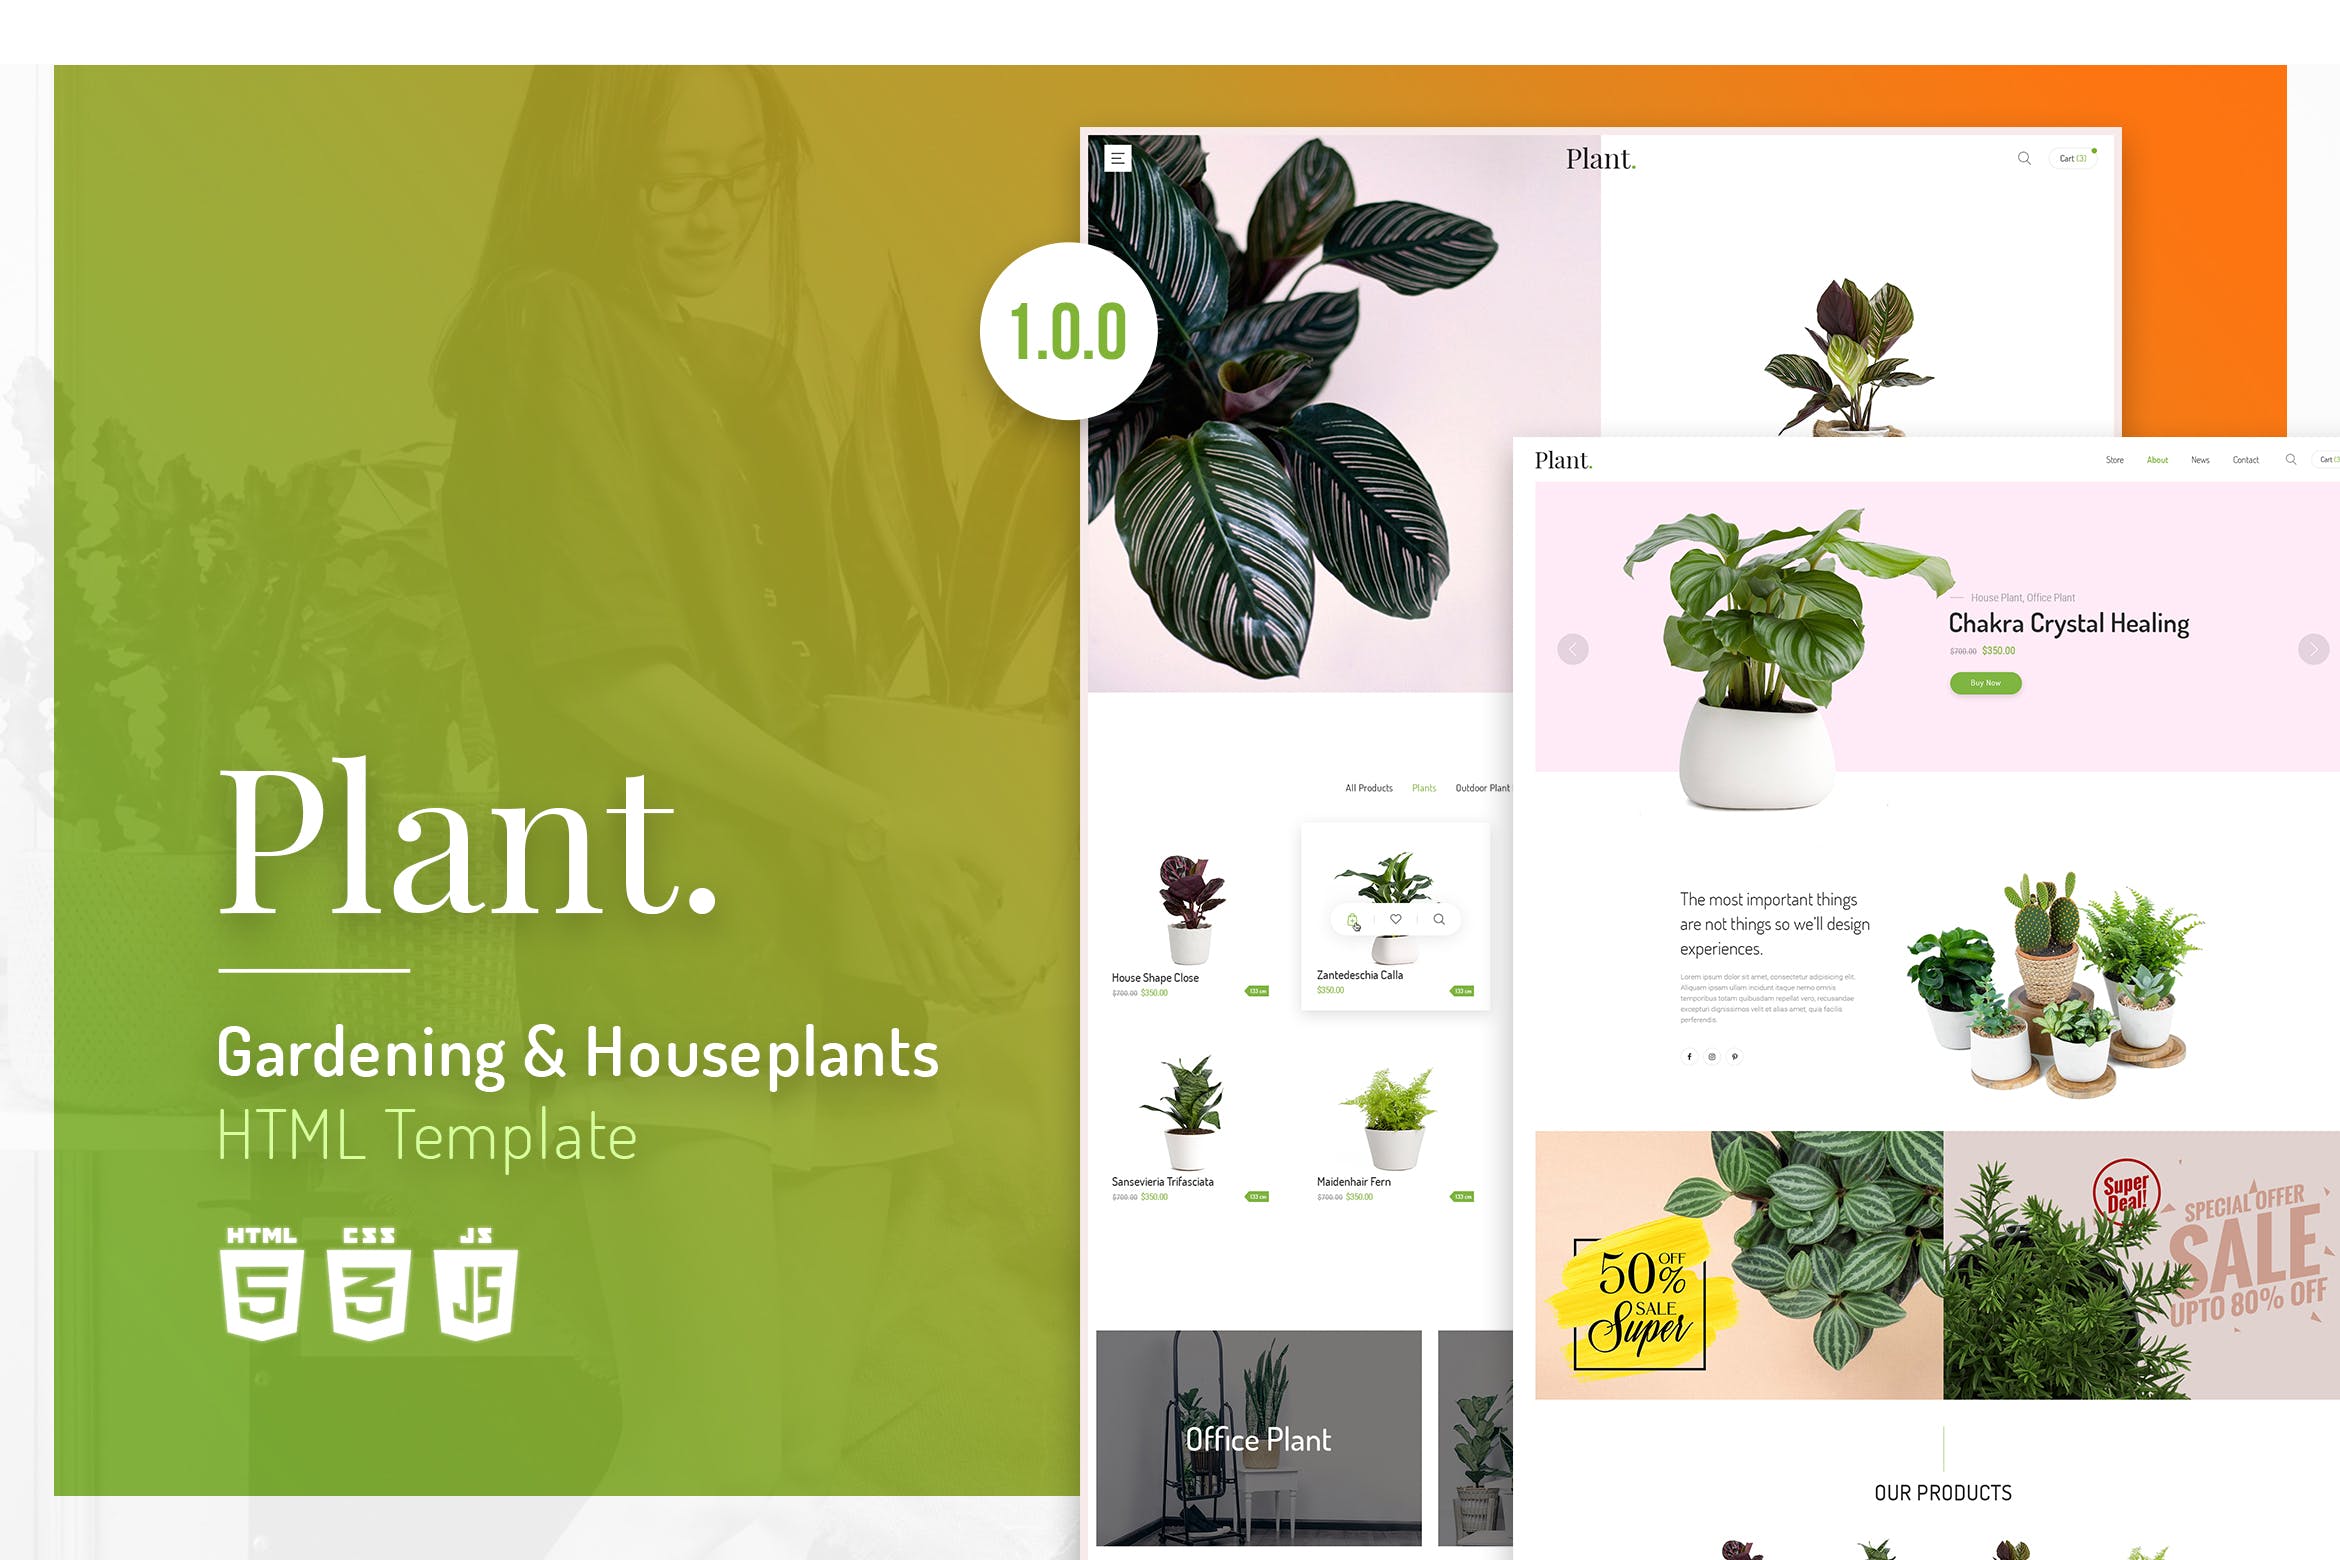 植物园艺设计/盆栽植物网上商城HTML模板第一素材精选 Plant | Gardening & Houseplants HTML Template插图